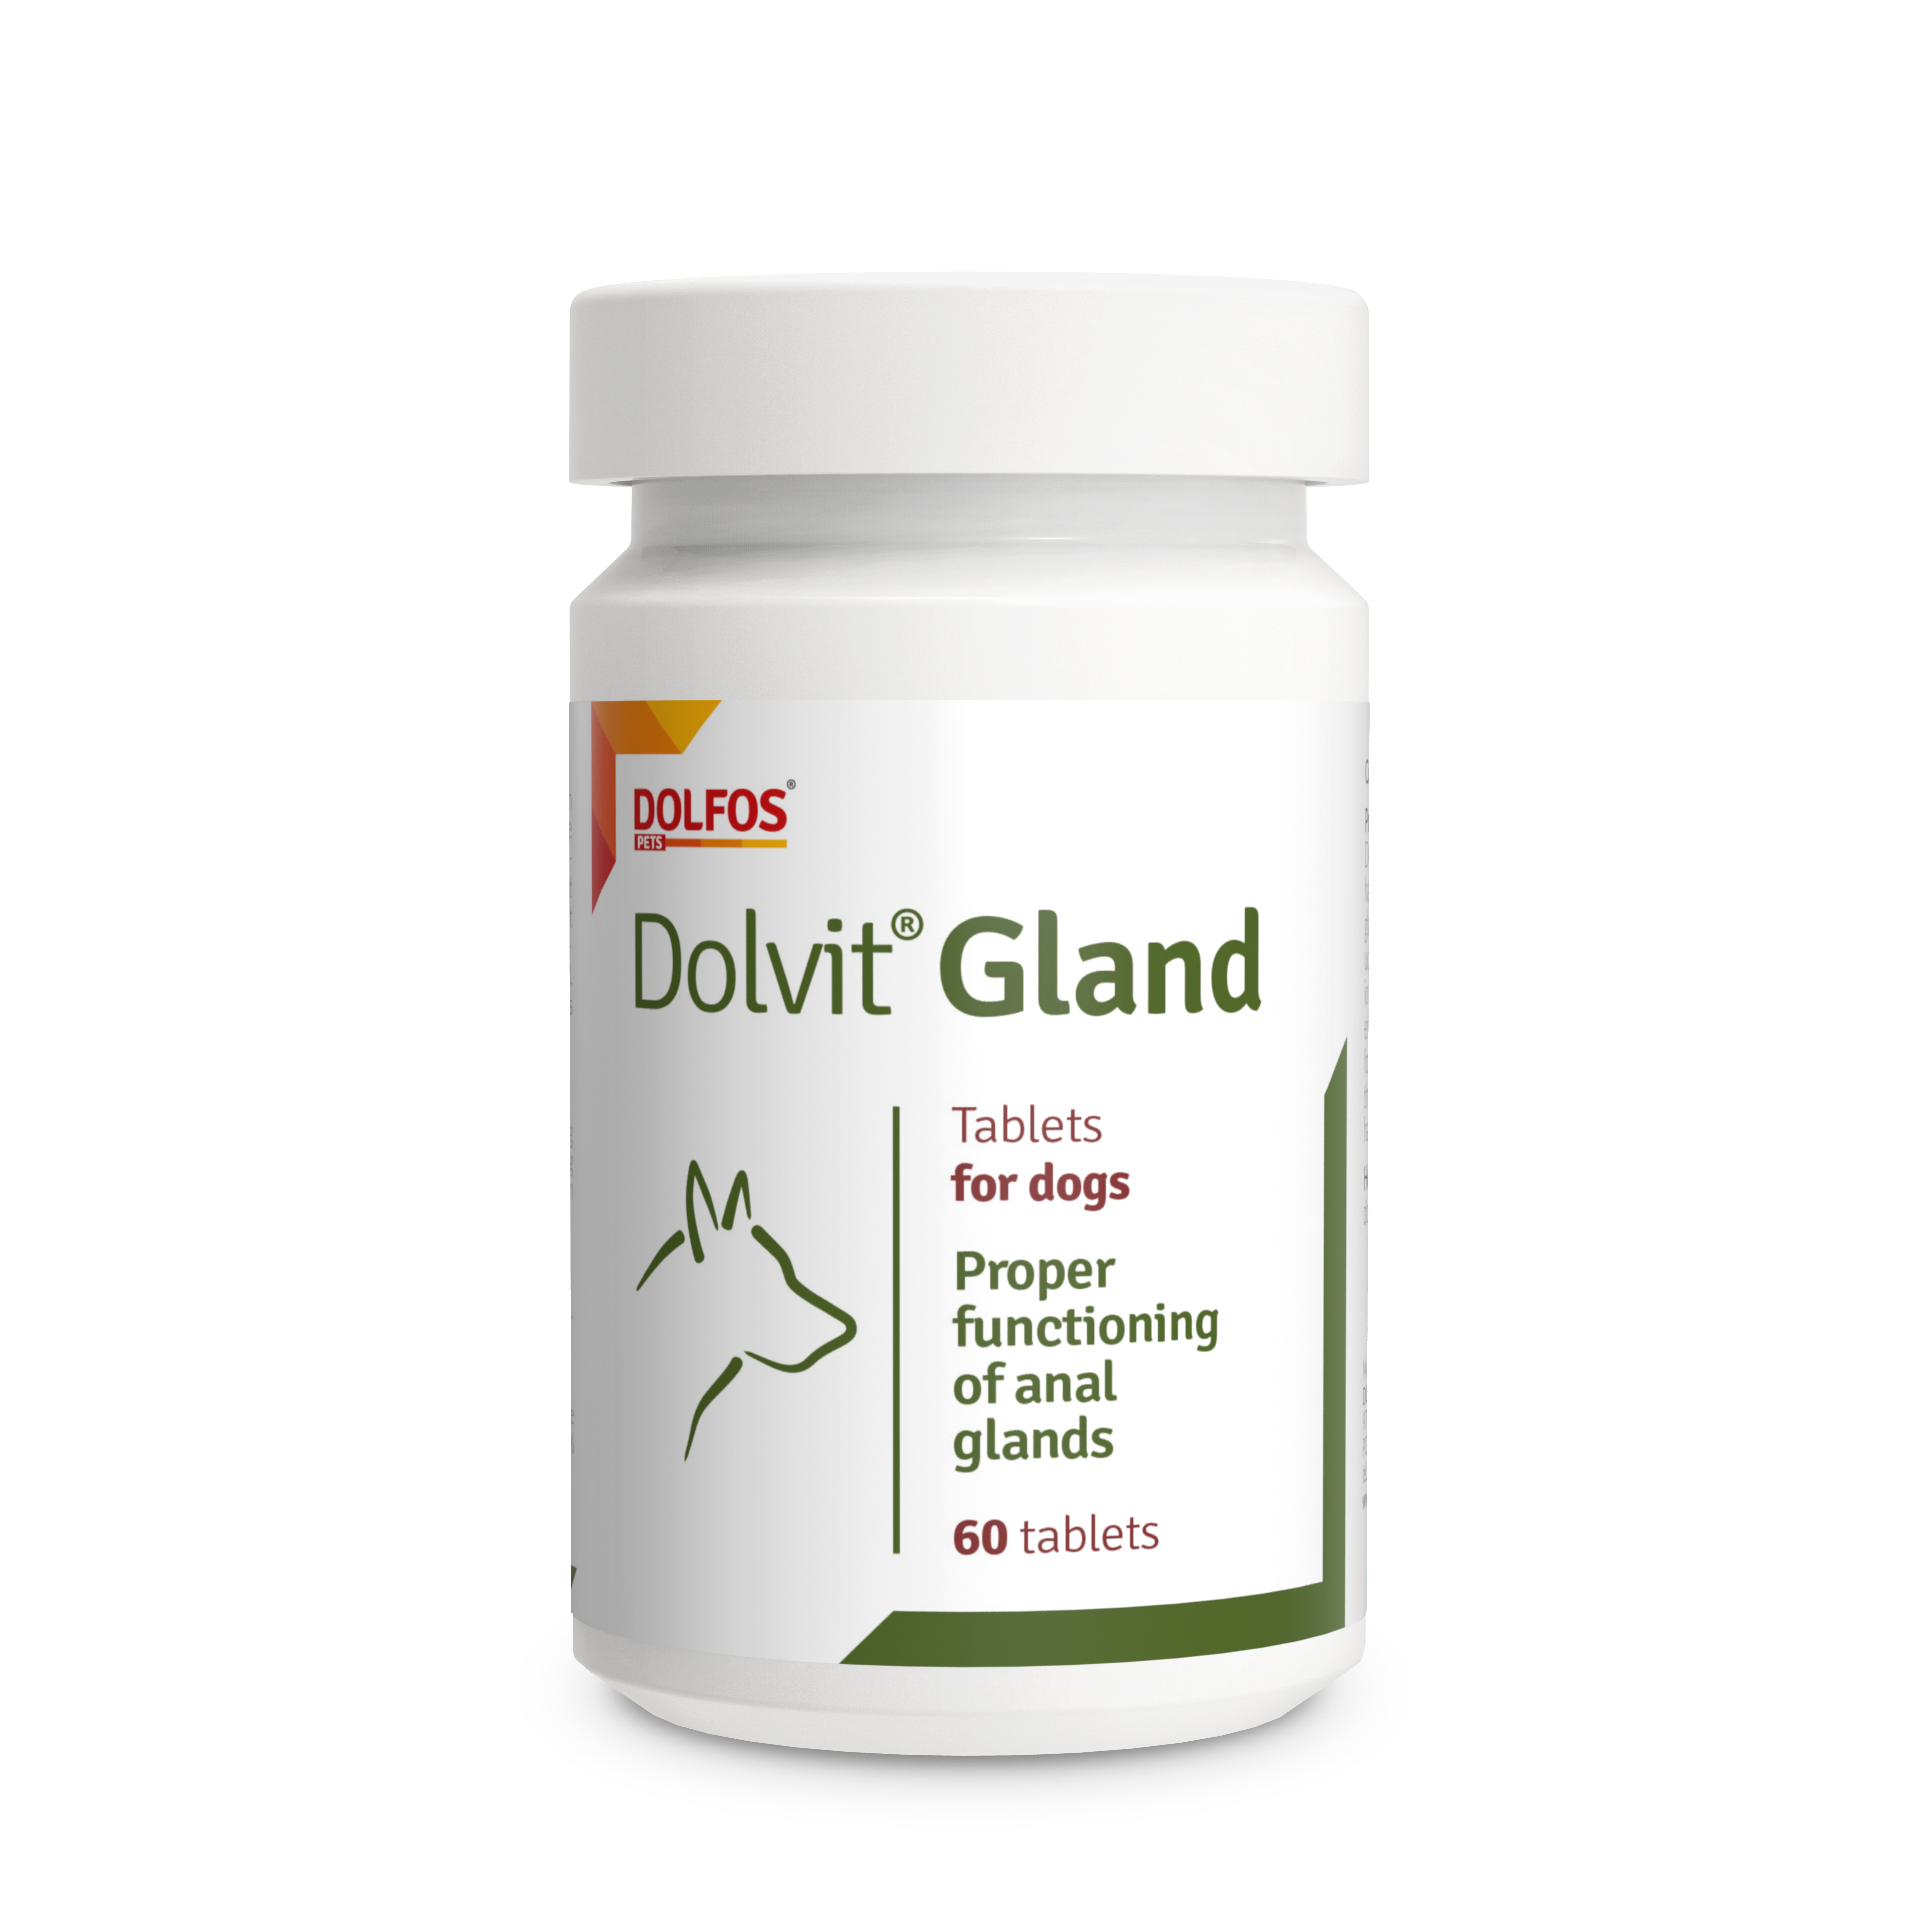 Dolvit Gland glándulas anales perros, es un producto natural para perros que tienen problemas para vaciar las glándulas perianales.